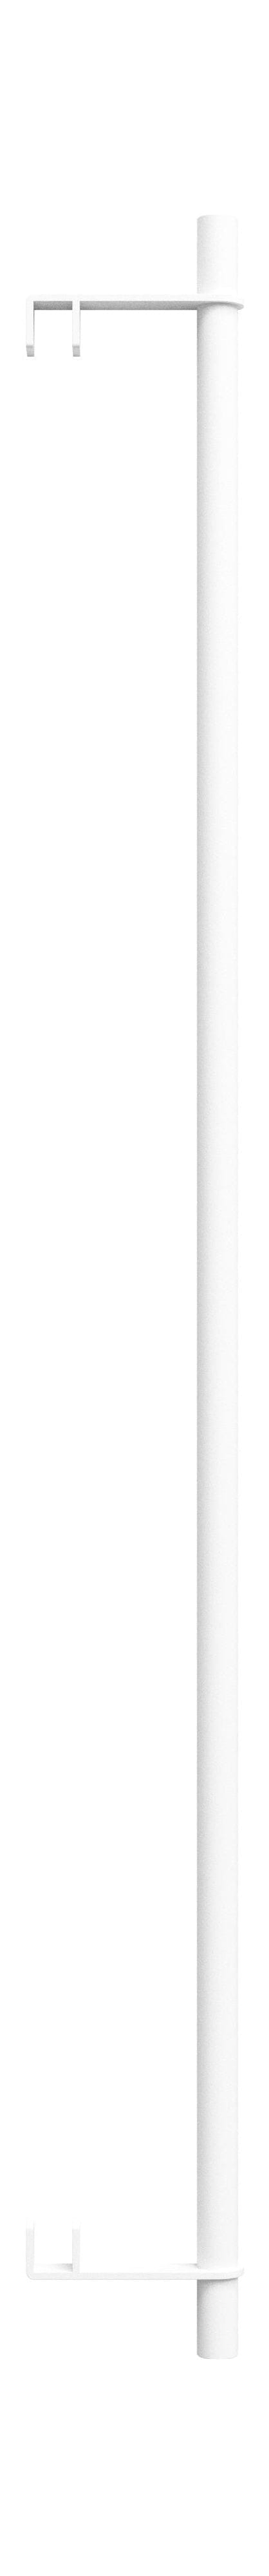 Moebe Sheveling System/Wall Sheveling Clothing Bar 85 cm, White